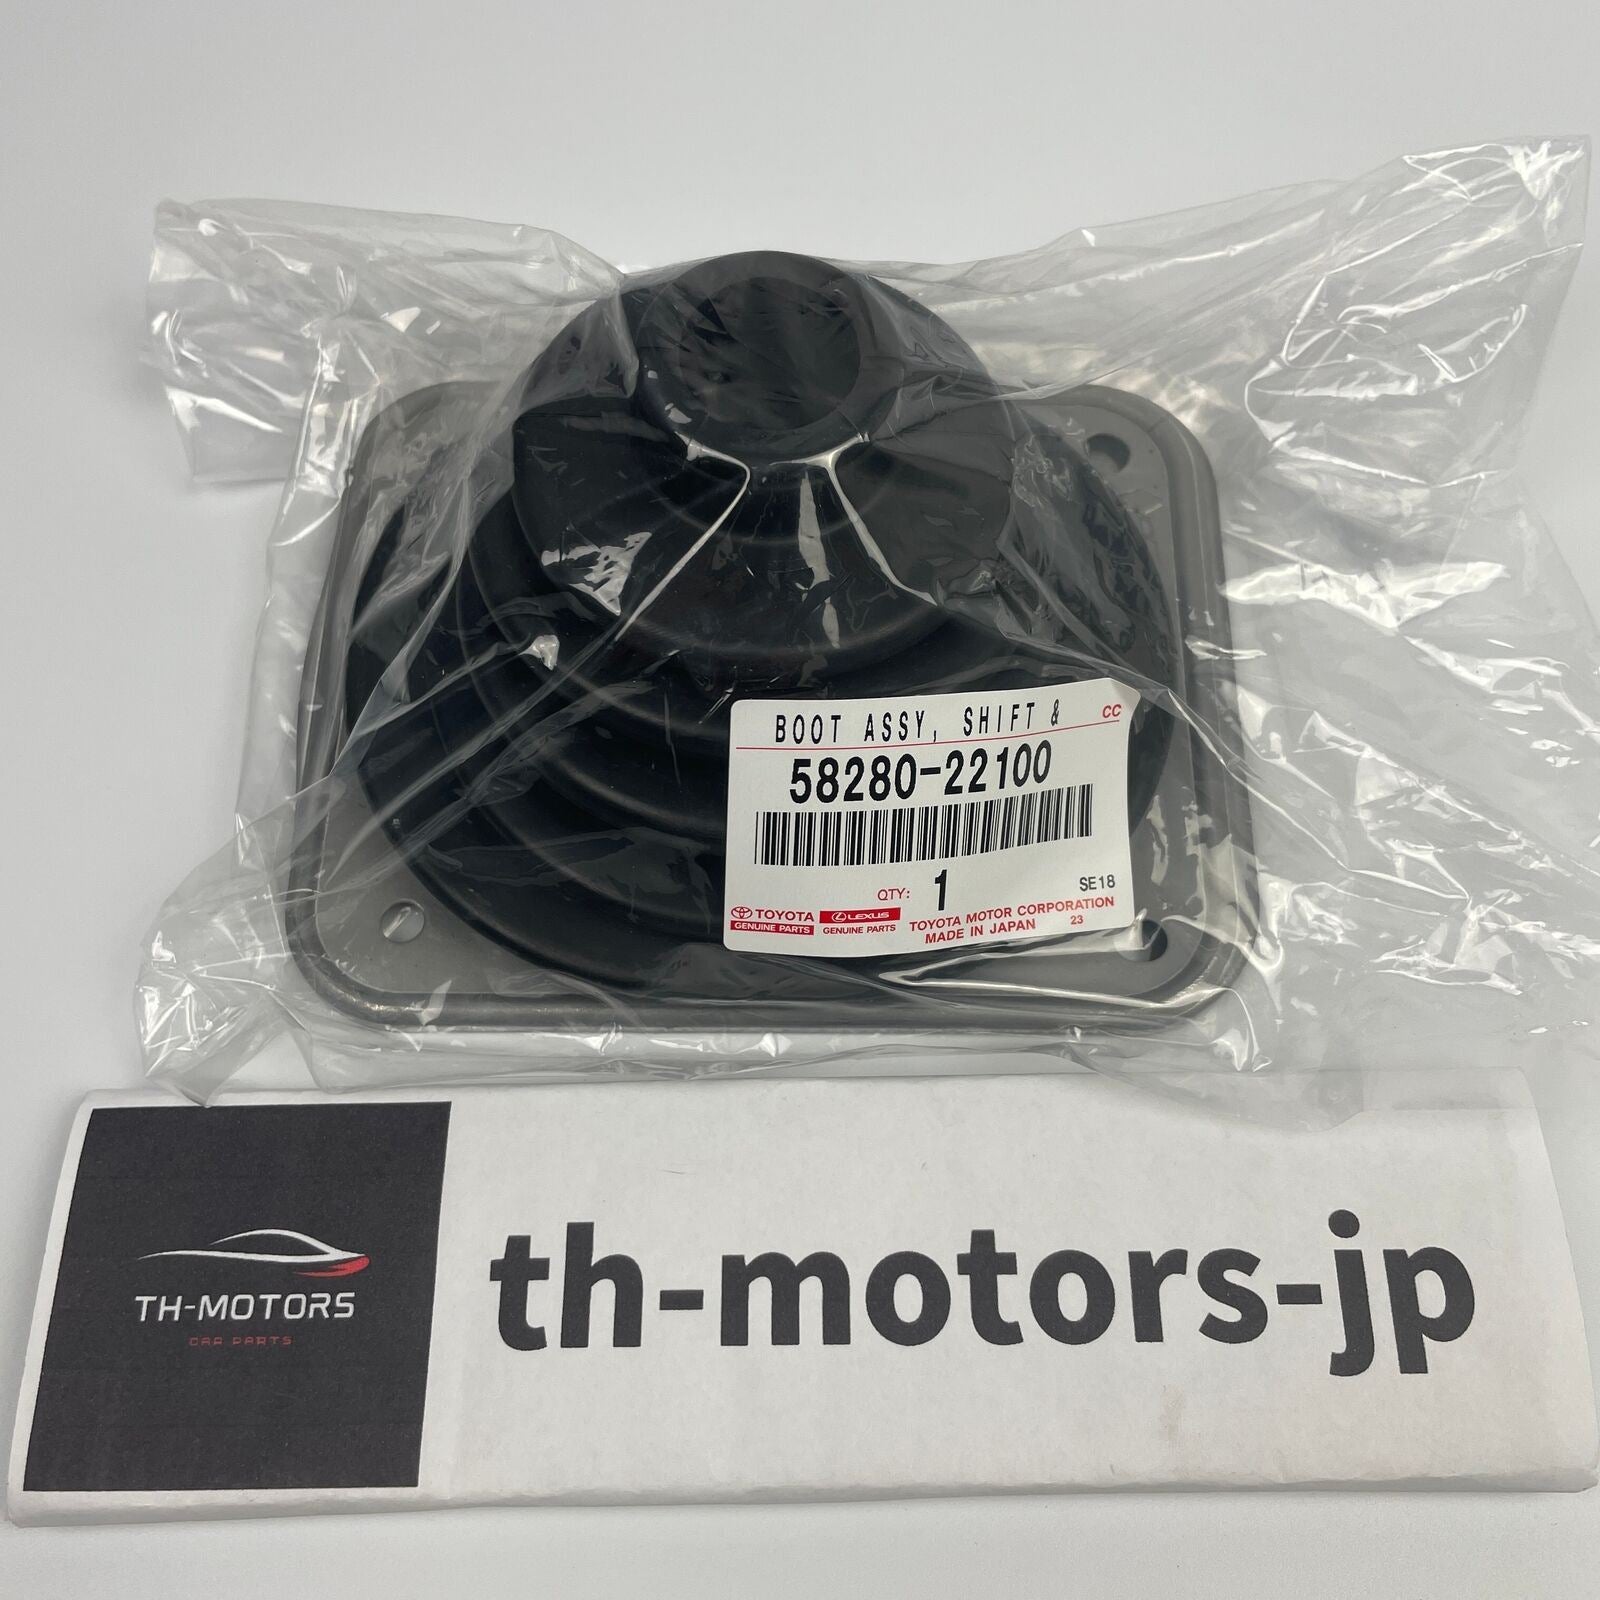 JZX100 – th-motors-jp